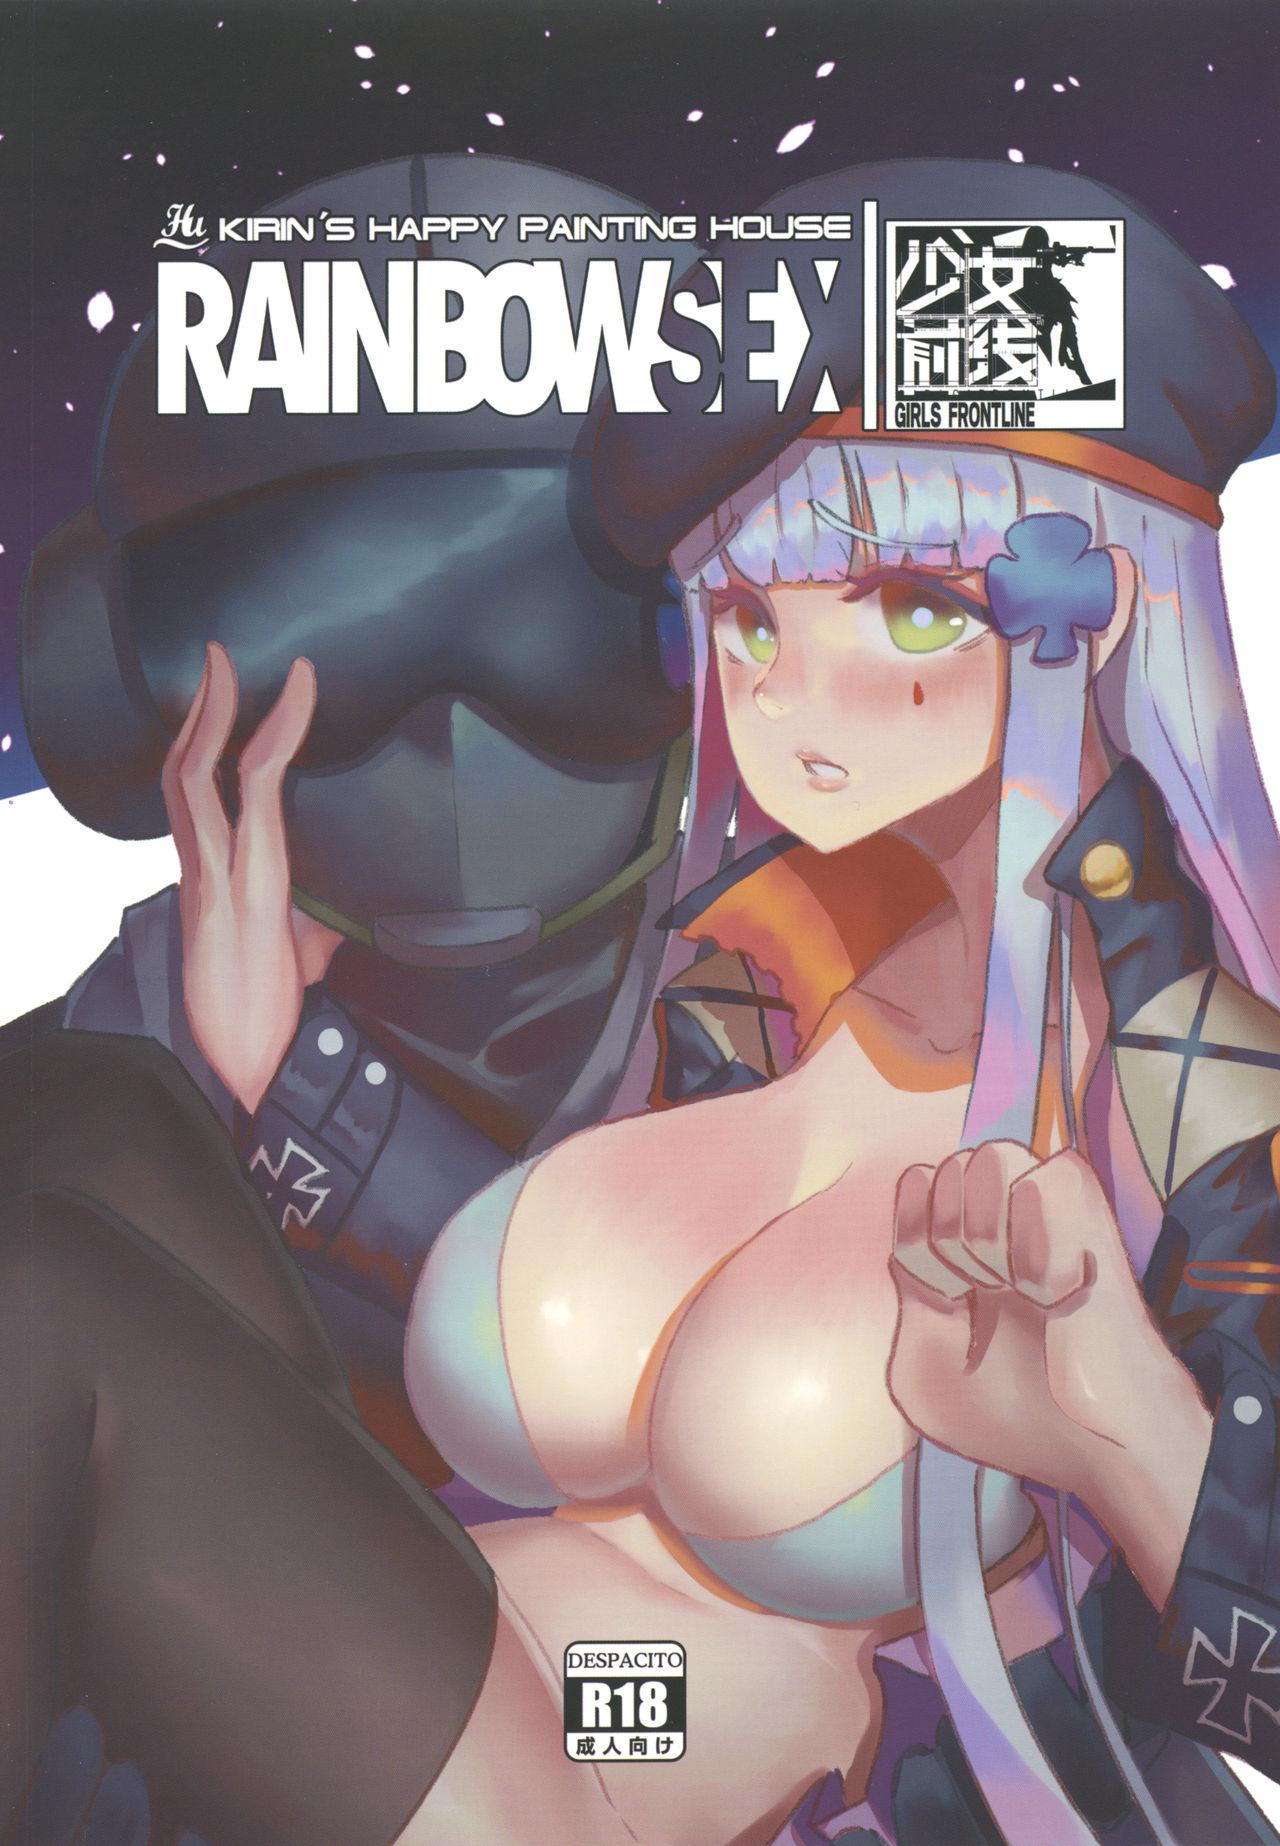 ]RAINBOW SEX HK416 0